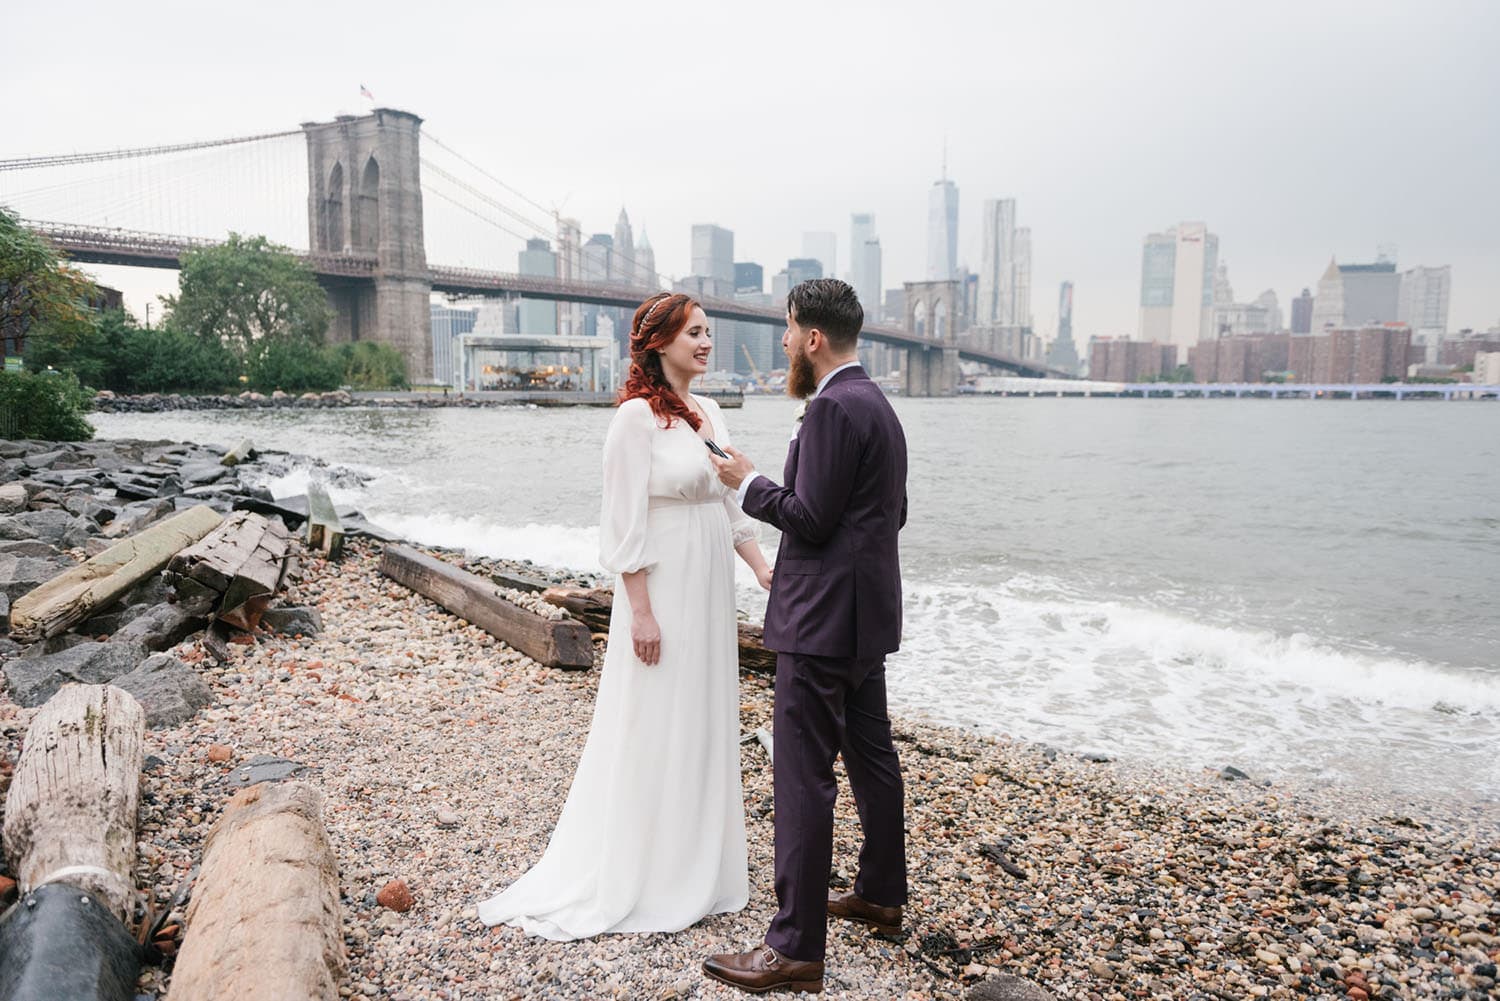 NYC elopement locations: brooklyn bridge park 